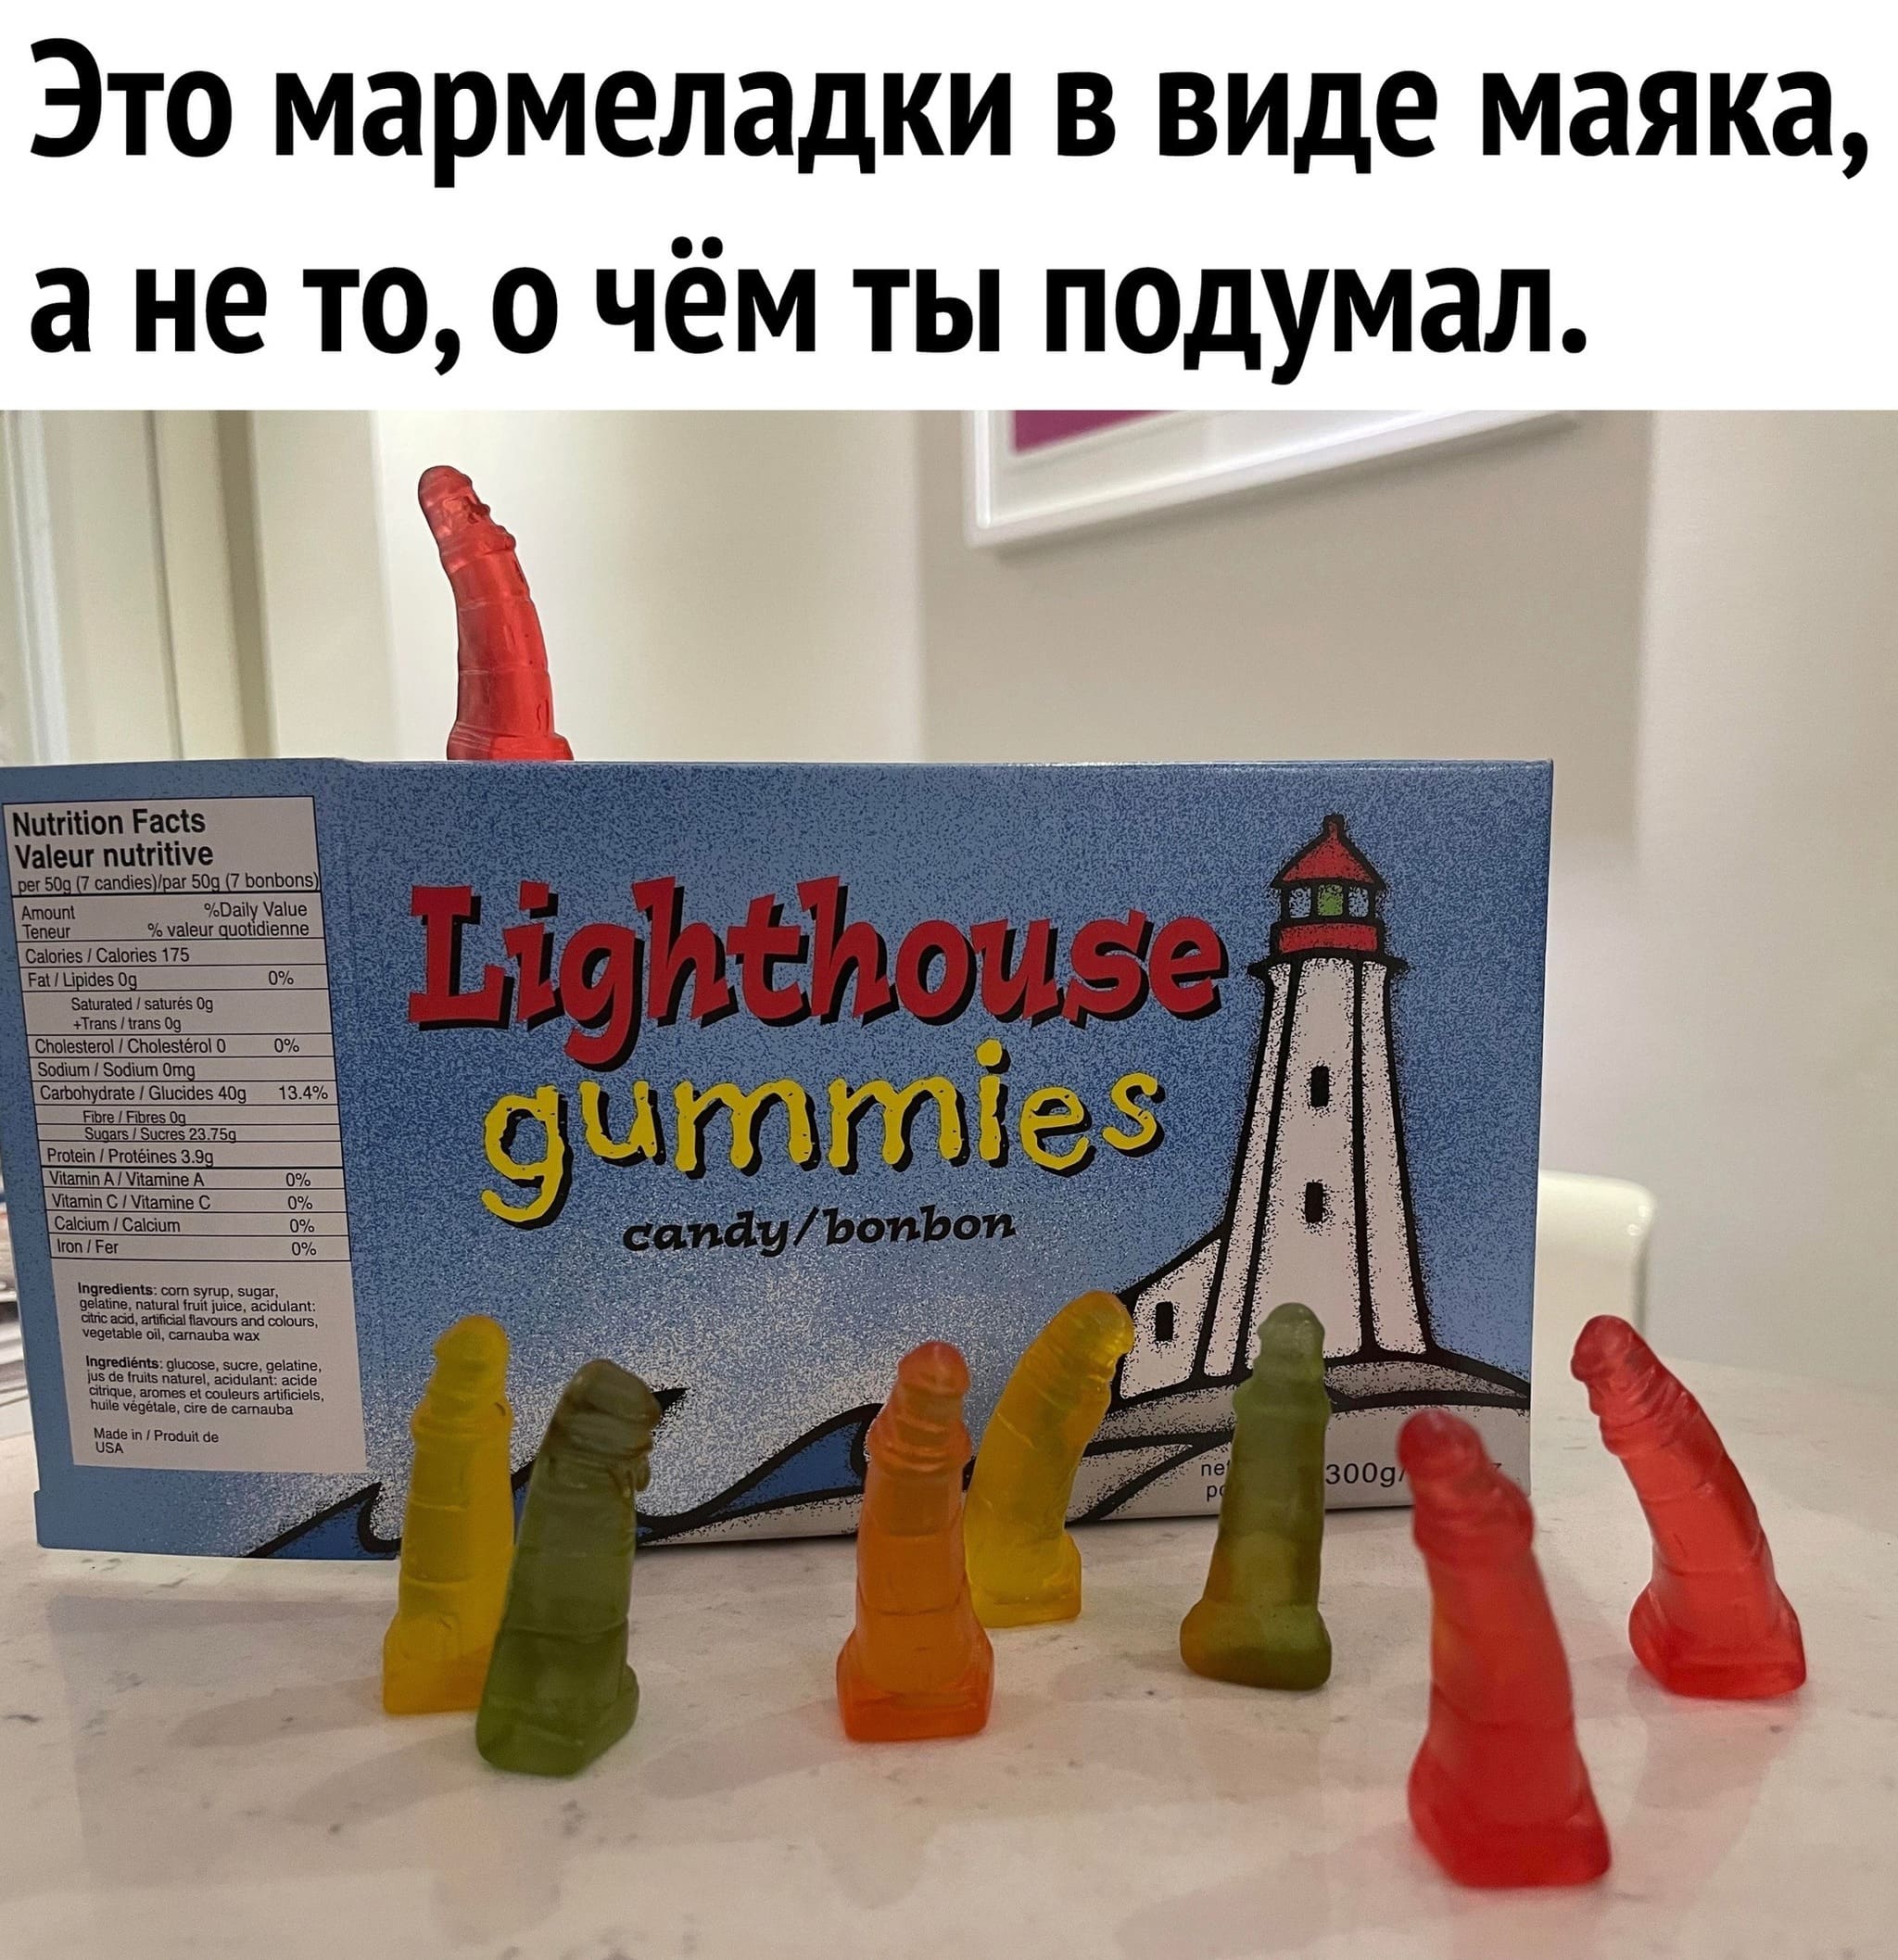 Это мармеладки в виде маяка, а не то, о чём ты подумал.
*Lighthouse gummies candy/bonbon*